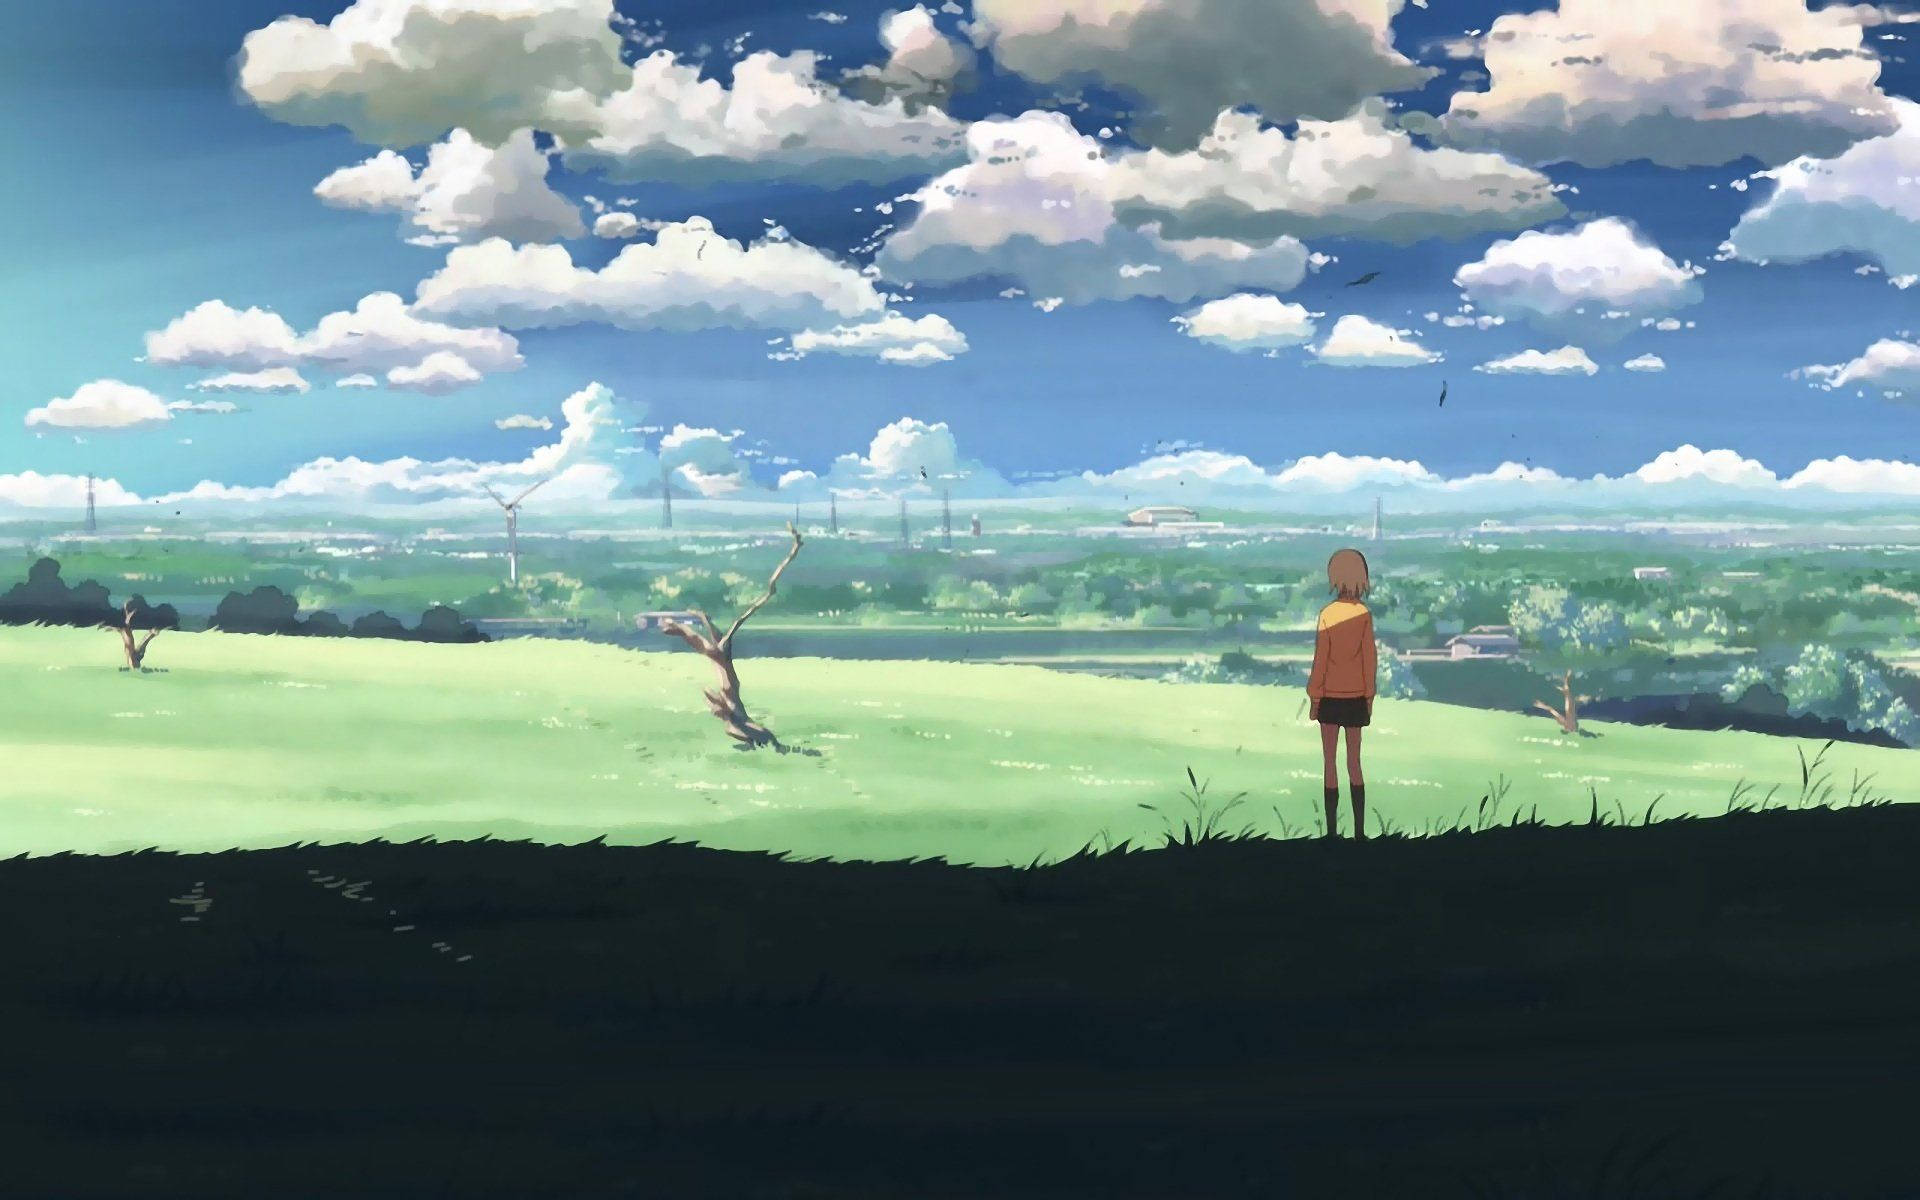 Enchanting Anime Landscape Of Vast Open Field